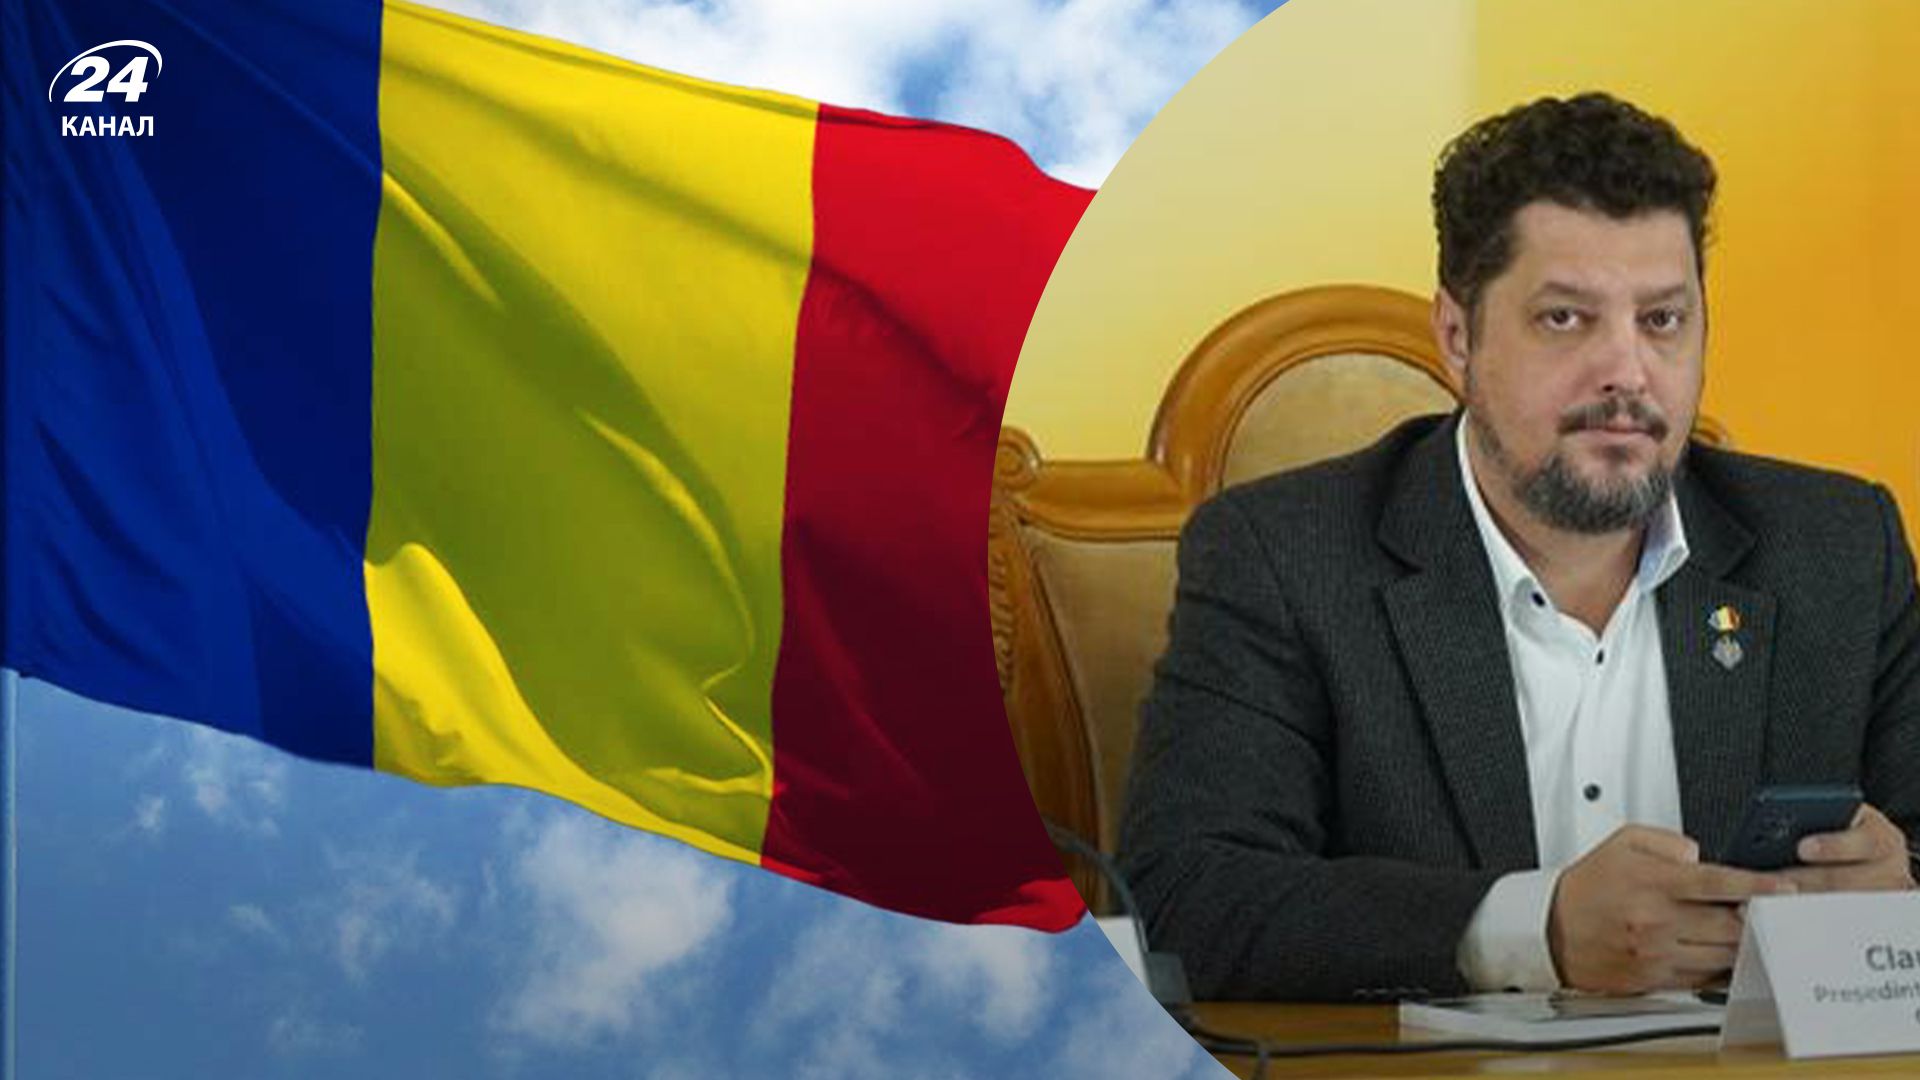 Лидер партии "Альянс за союз Румынии" заявил, что хочет аннексировать некоторые территории Украины